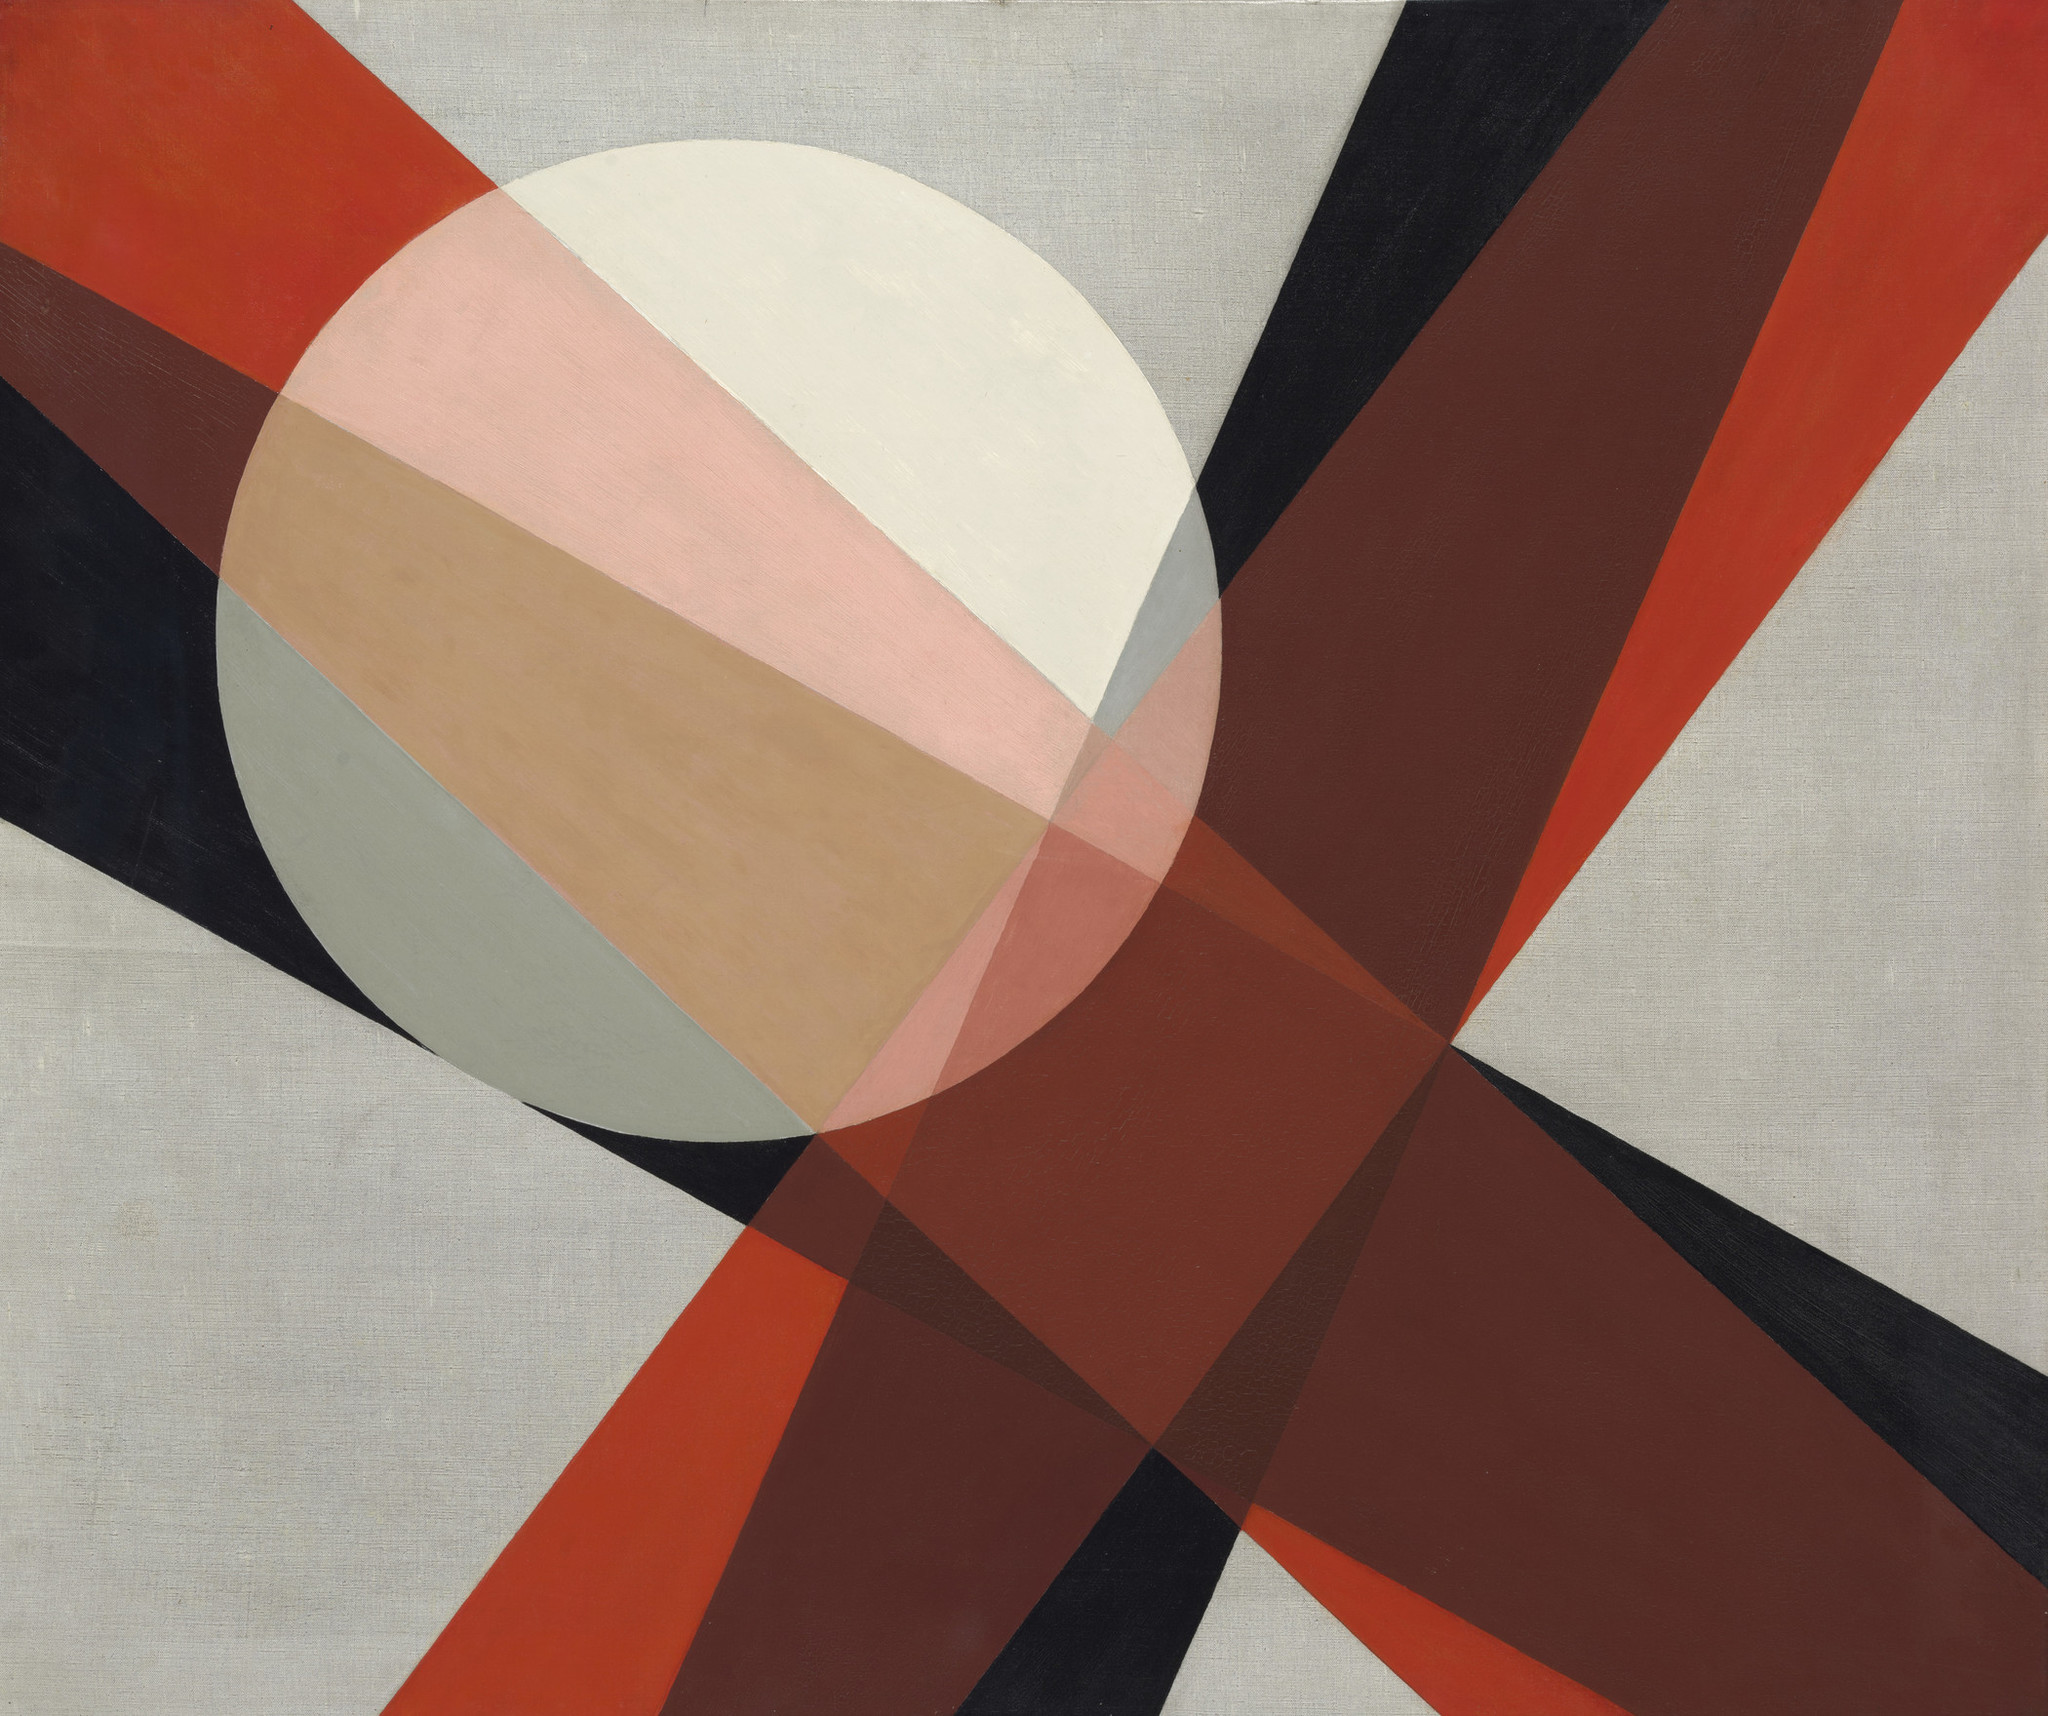 Laszlo Moholy-Nagy, "A 19," 1927, oil on canvas